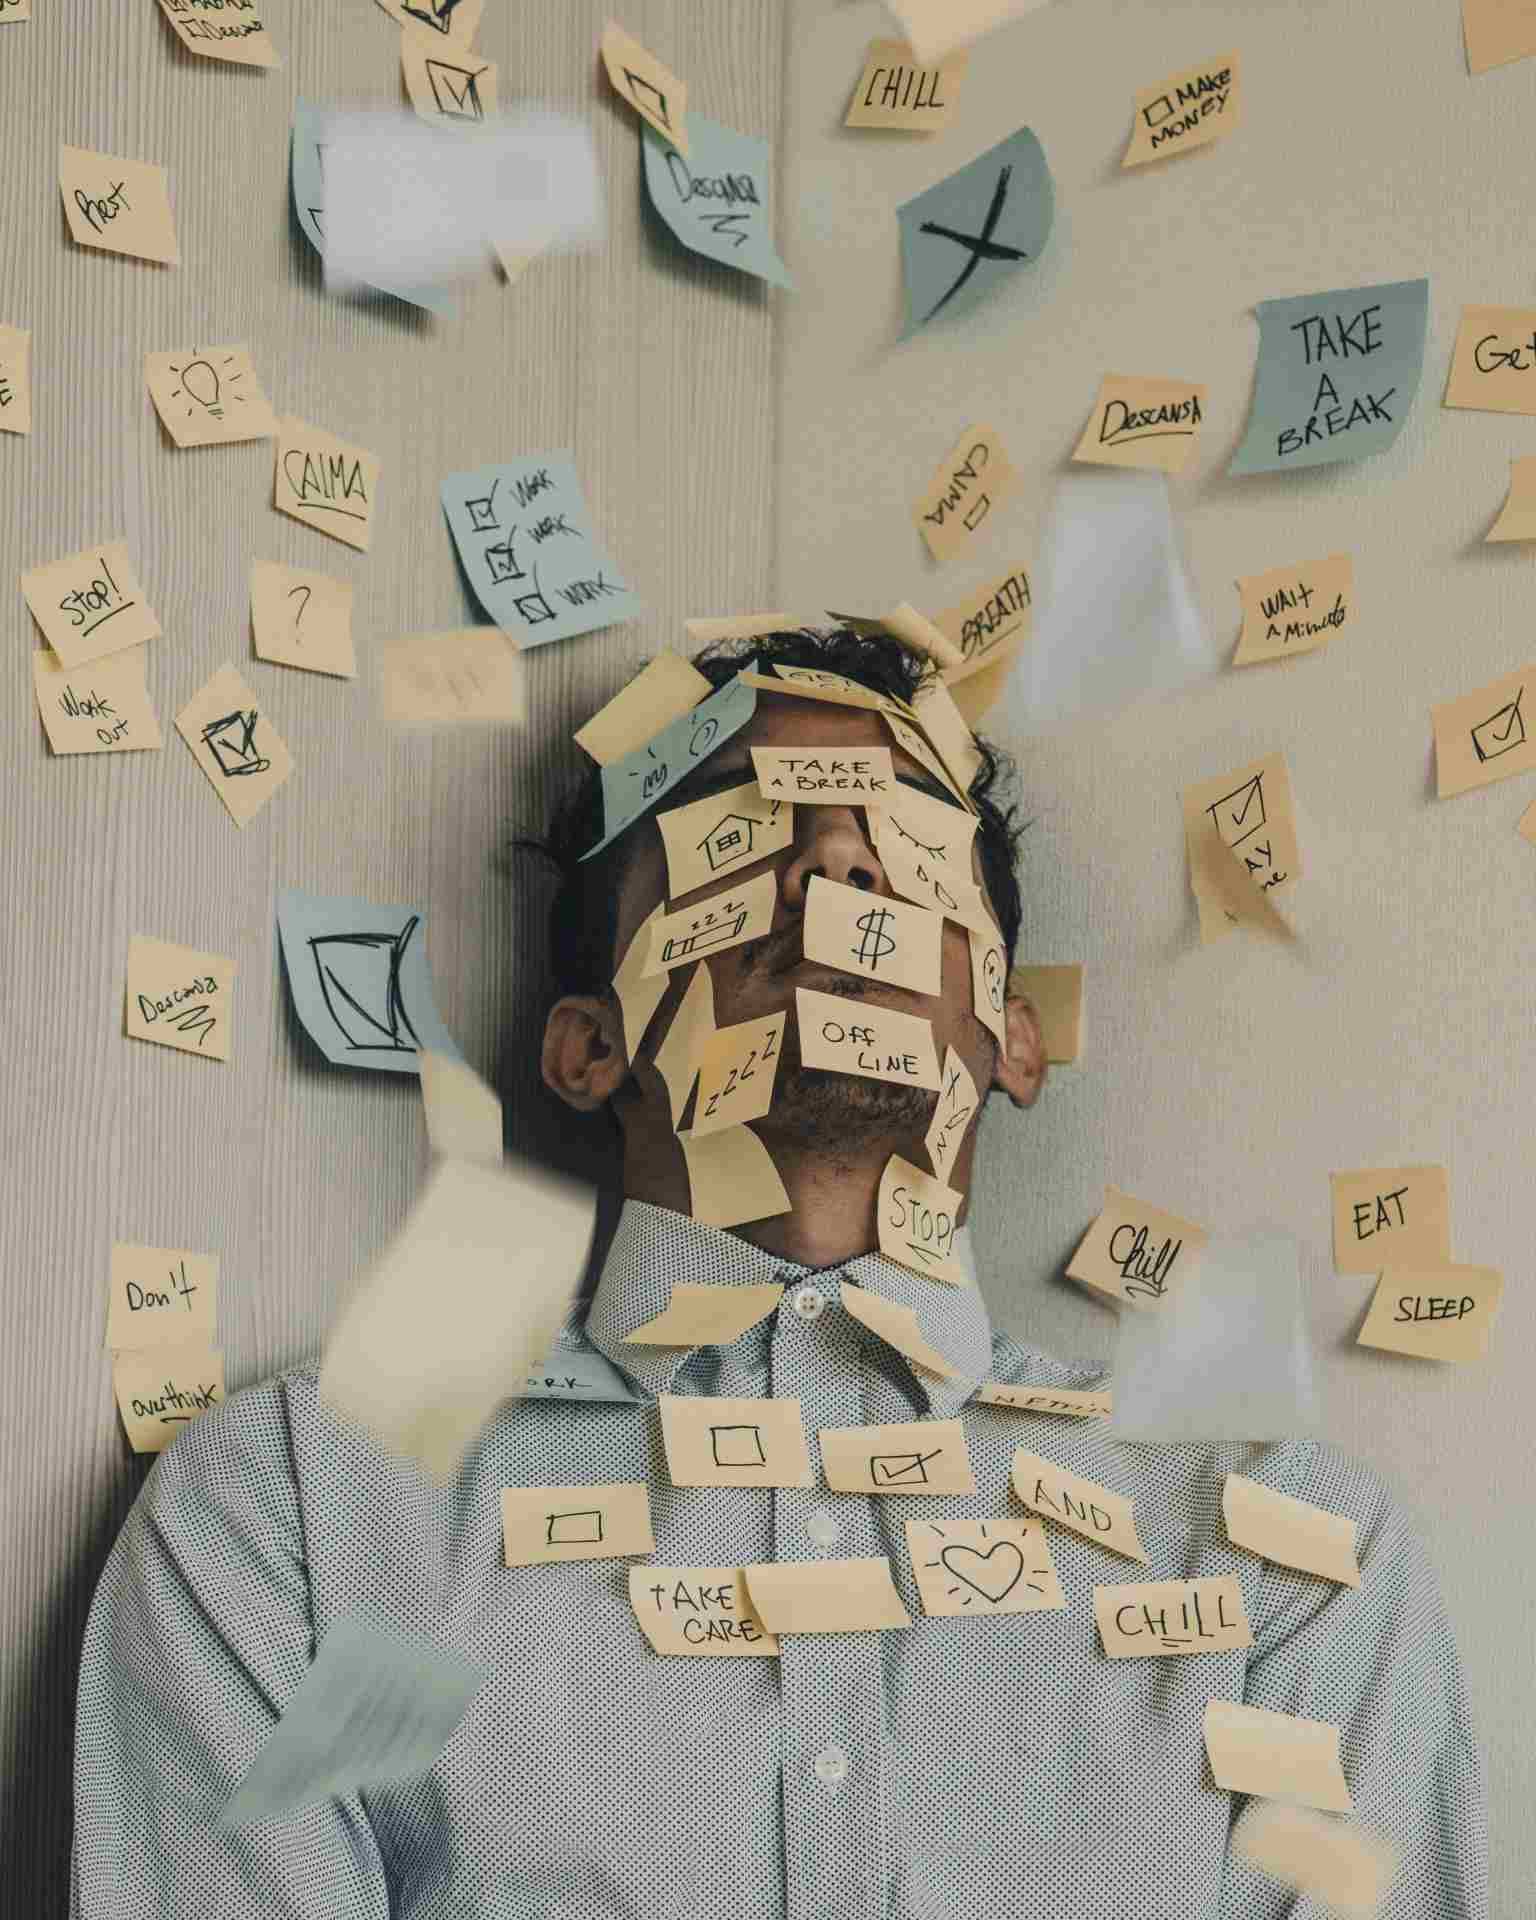 una persona agobiada con el trabajo en la oficina descansa con la cara cubierta de posit con mensajes para despertar su motivacion intrinseca